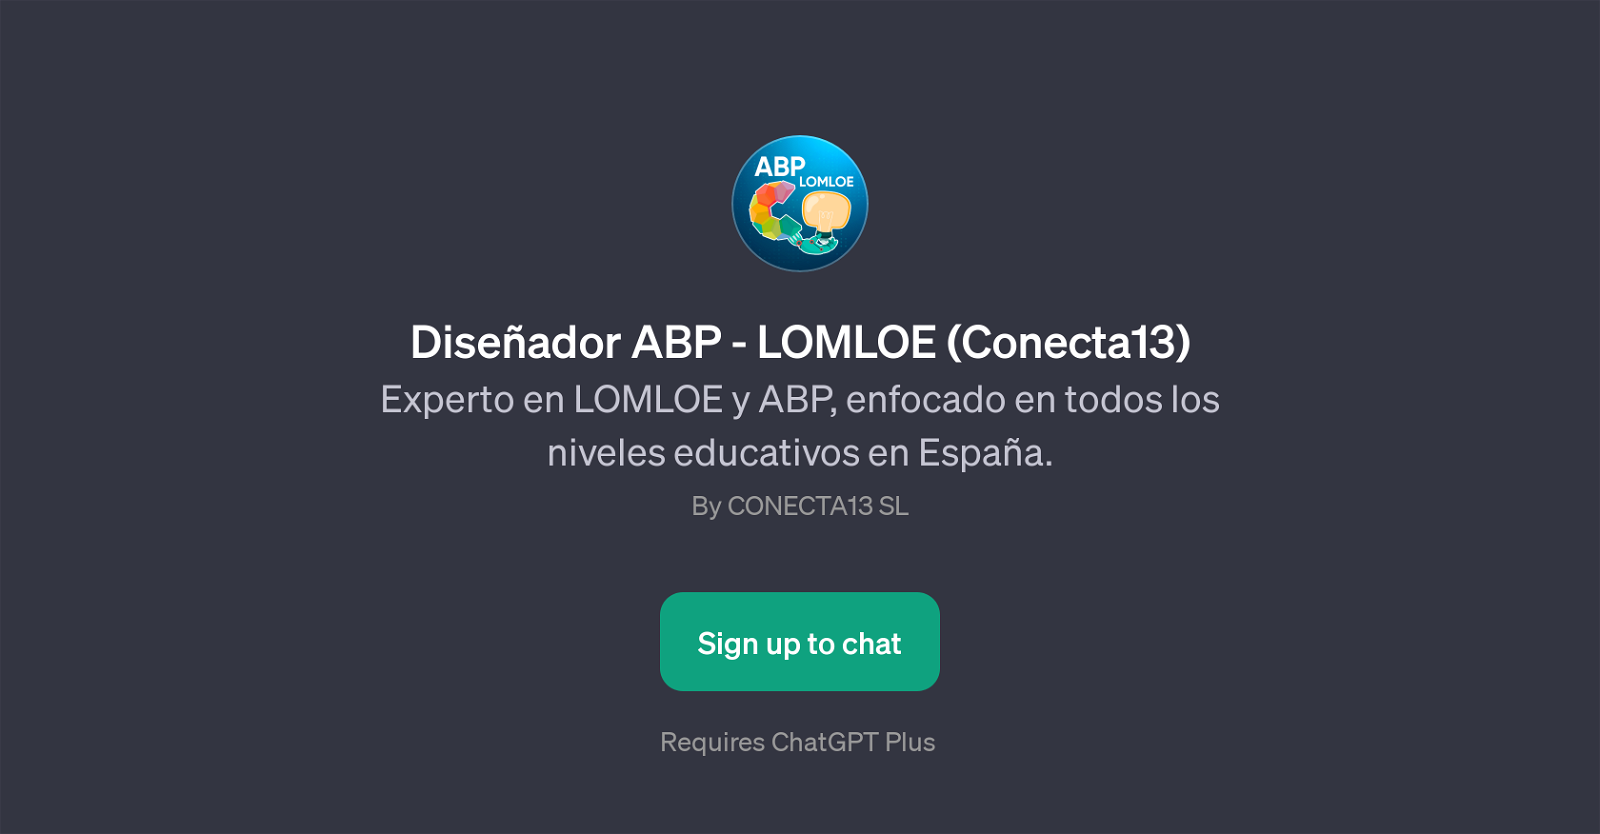 Diseador ABP - LOMLOE (Conecta13) website